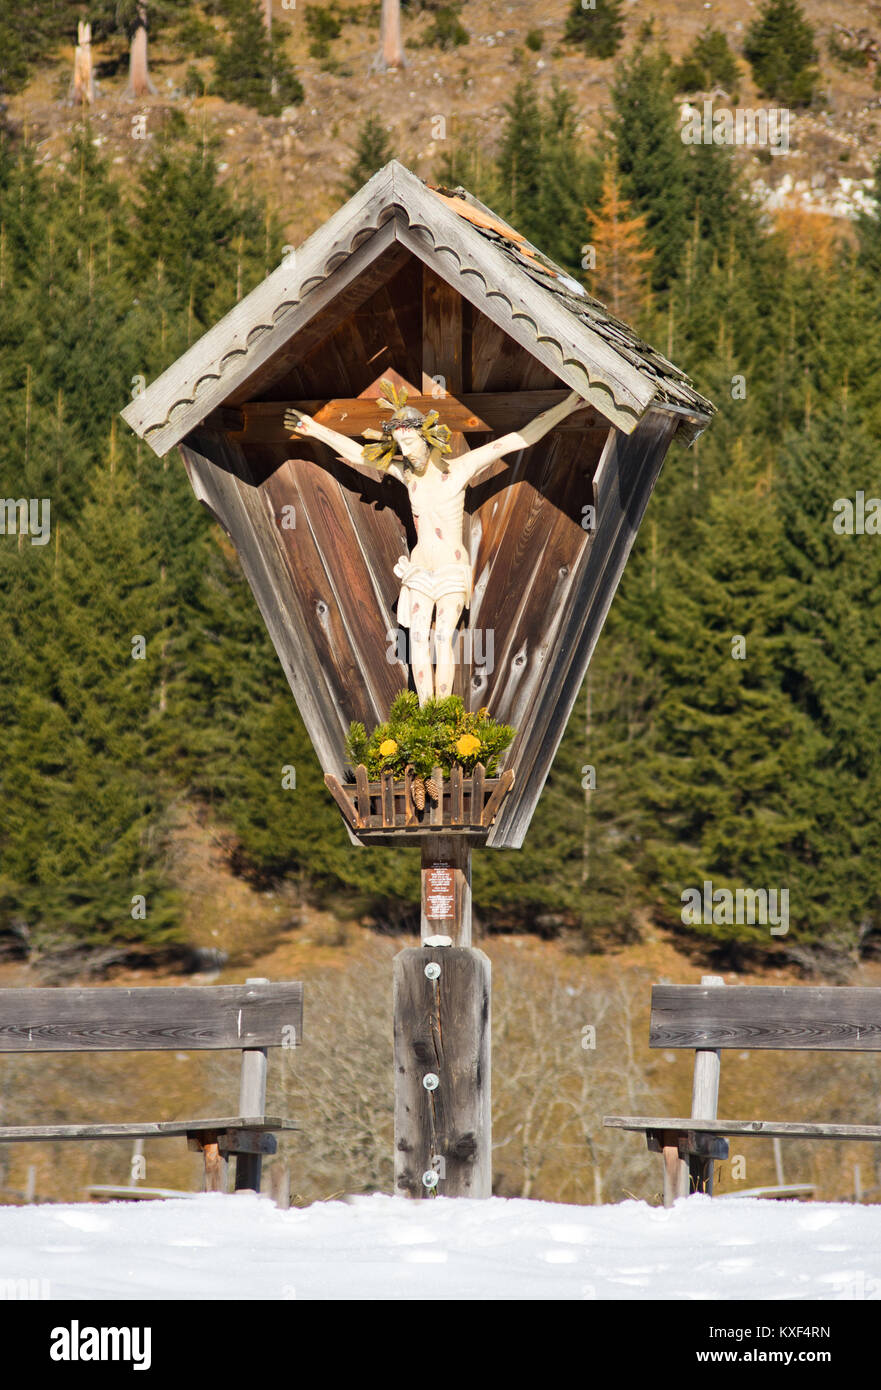 Piccolo Santuario con l'immagine di Cristo scolpito in legno con panche tipico dei sentieri di montagna con la foresta in background Foto Stock